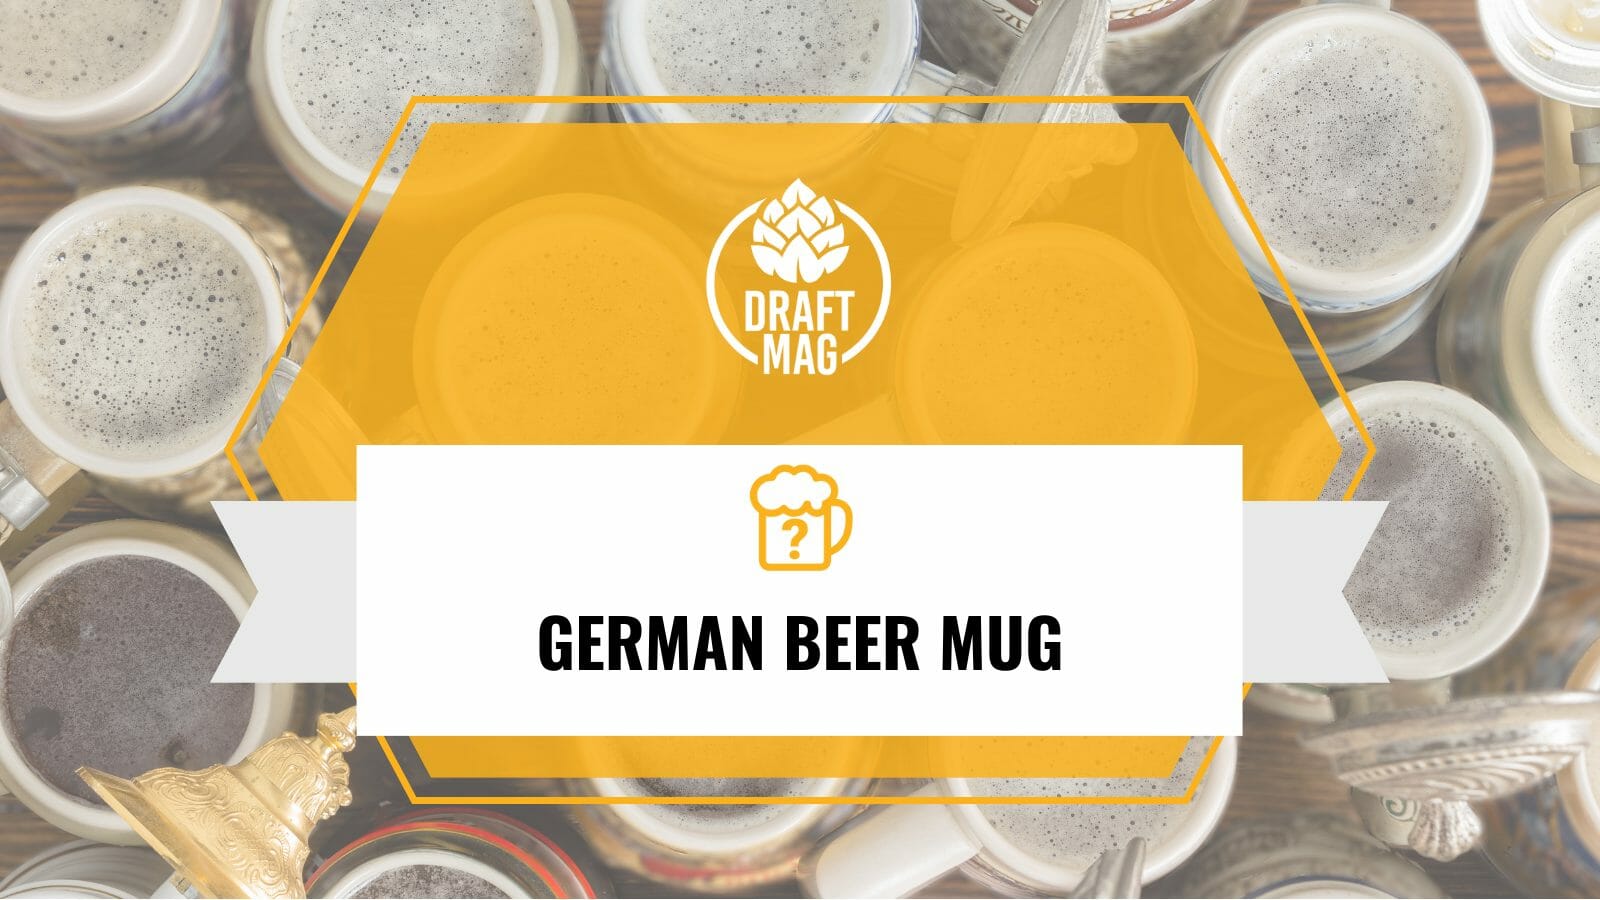 German beer mug name